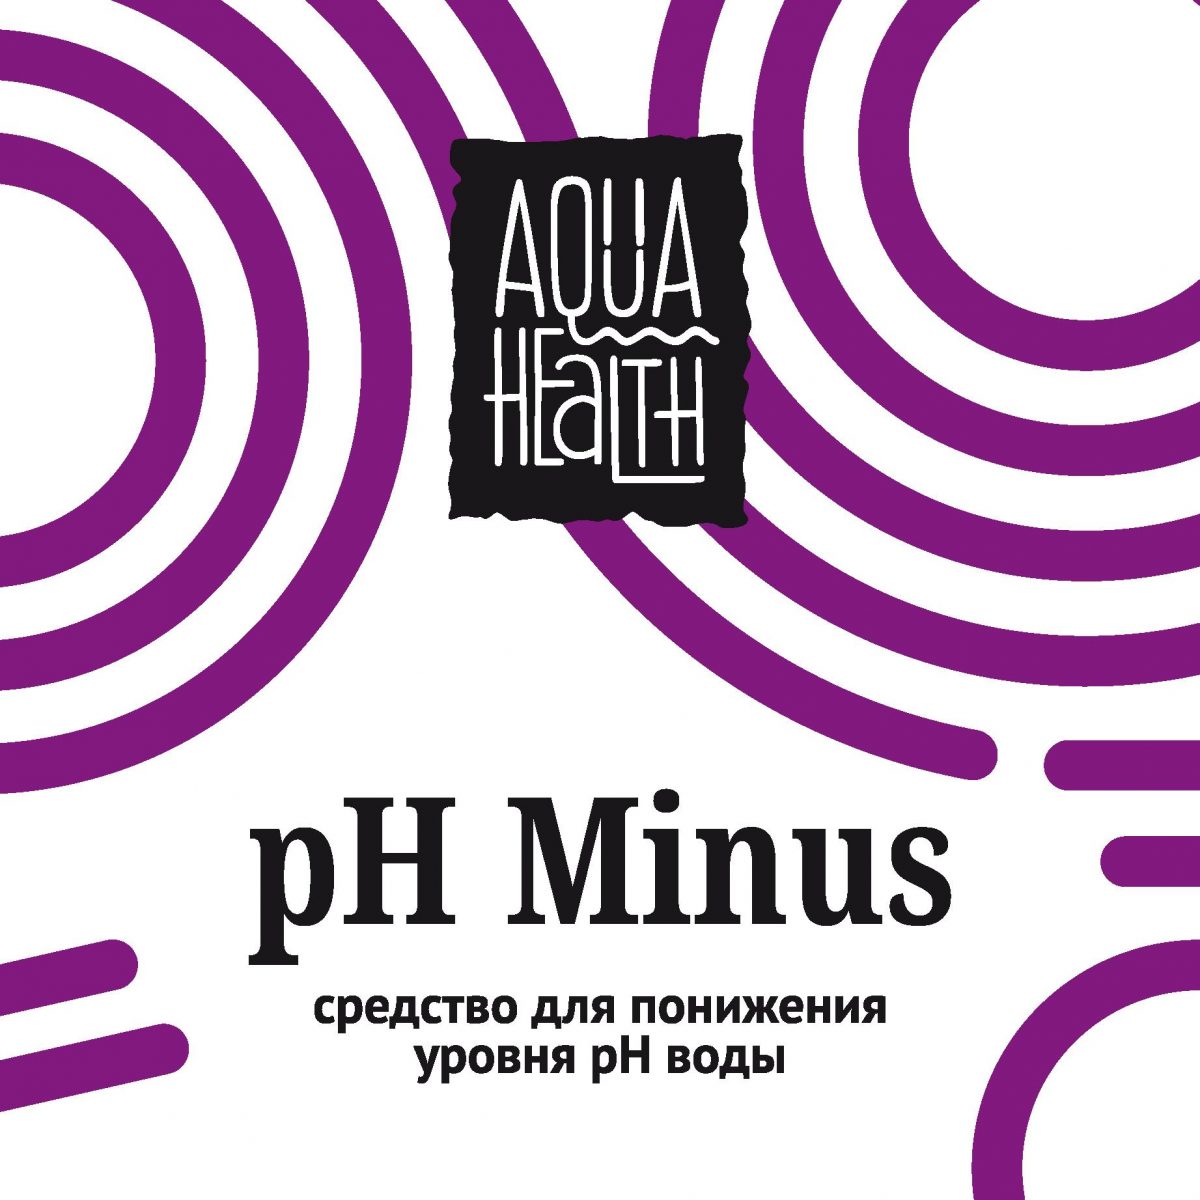 Средство для бассейнов Aqua Health pH MINUS 20кг